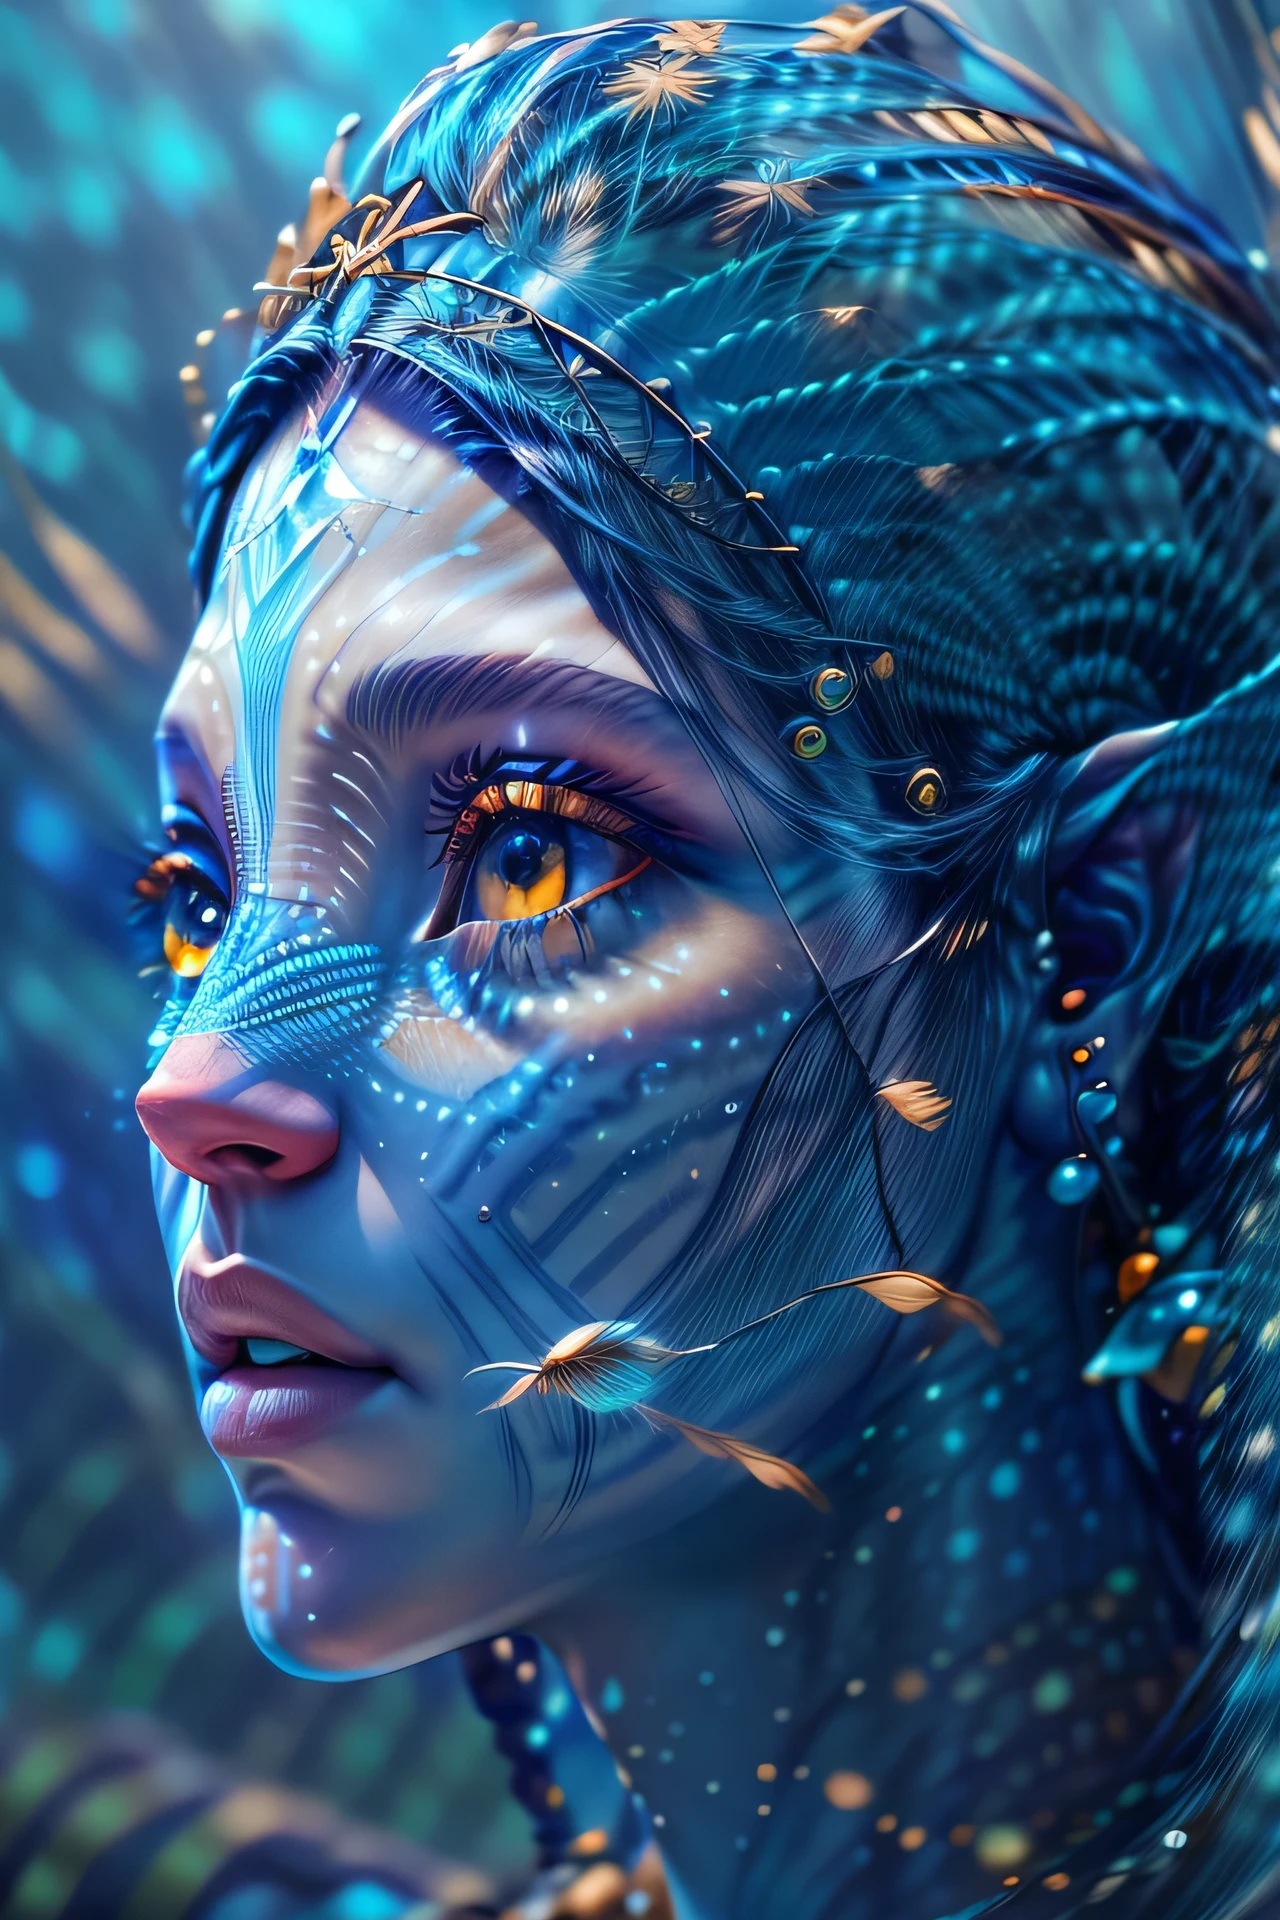 модная фотография портрет синего человеческого аватара, в синем море с рыбой, 3D рендеринг, компьютерная графика, симметричный, Октановый рендер, 35 мм, боке, 9:16, (сложные детали:1.12), HDR, (сложные детали, гипердетализированный:1.15), (Естественная текстура кожи, гиперреализм, Мягкий свет, острый:1.2)
